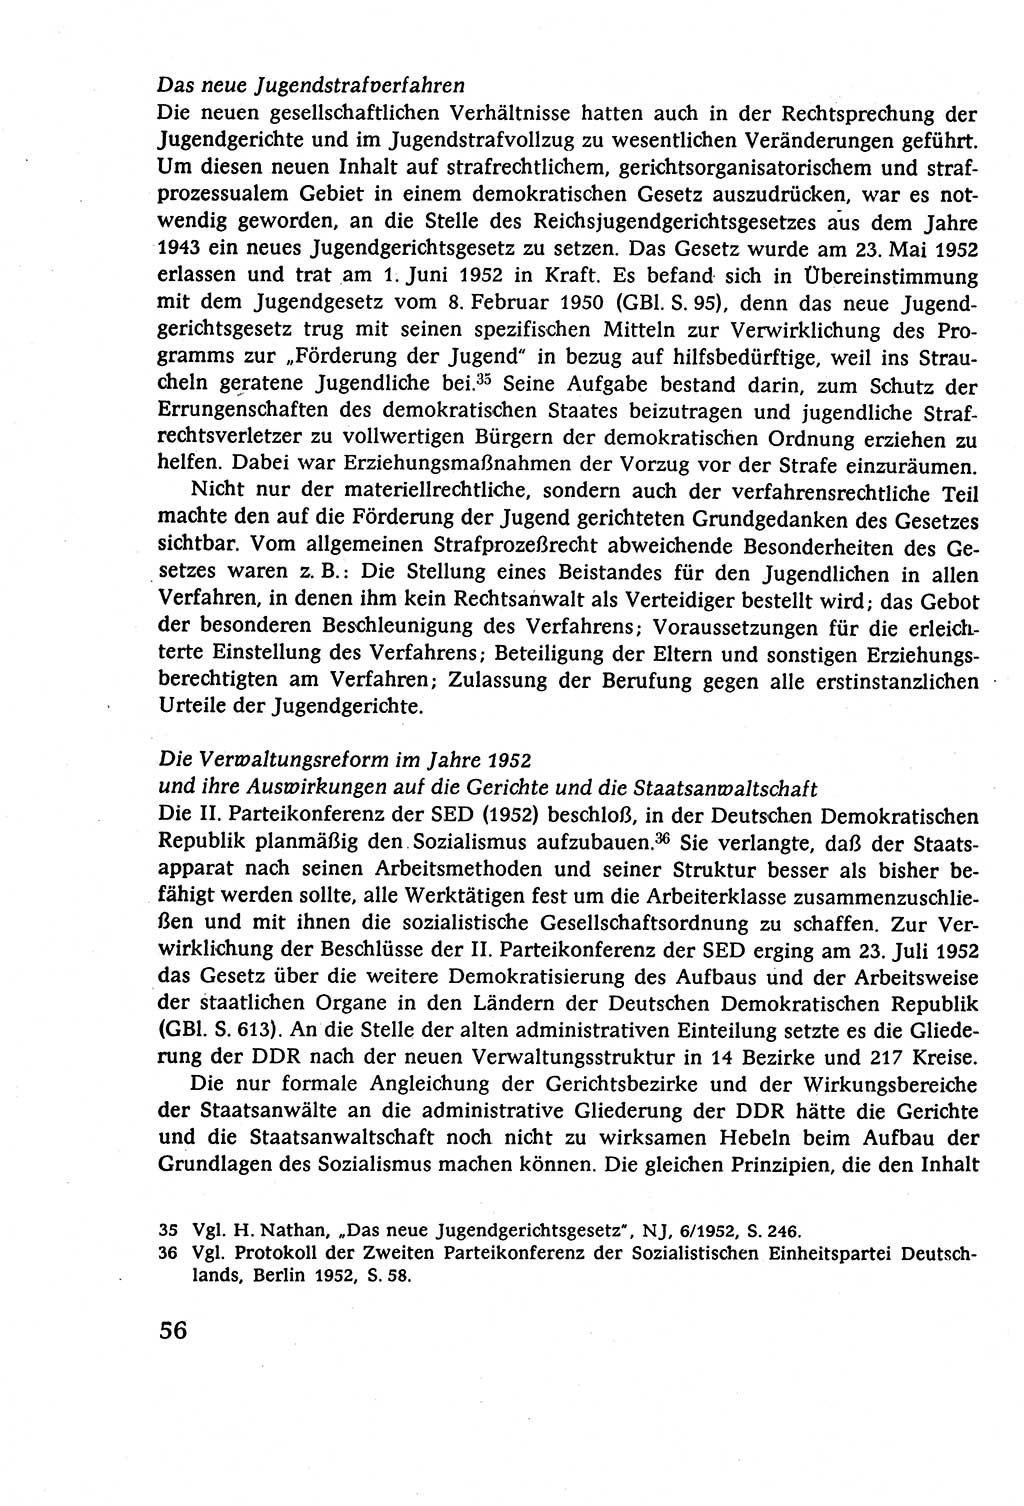 Strafverfahrensrecht [Deutsche Demokratische Republik (DDR)], Lehrbuch 1977, Seite 56 (Strafverf.-R. DDR Lb. 1977, S. 56)